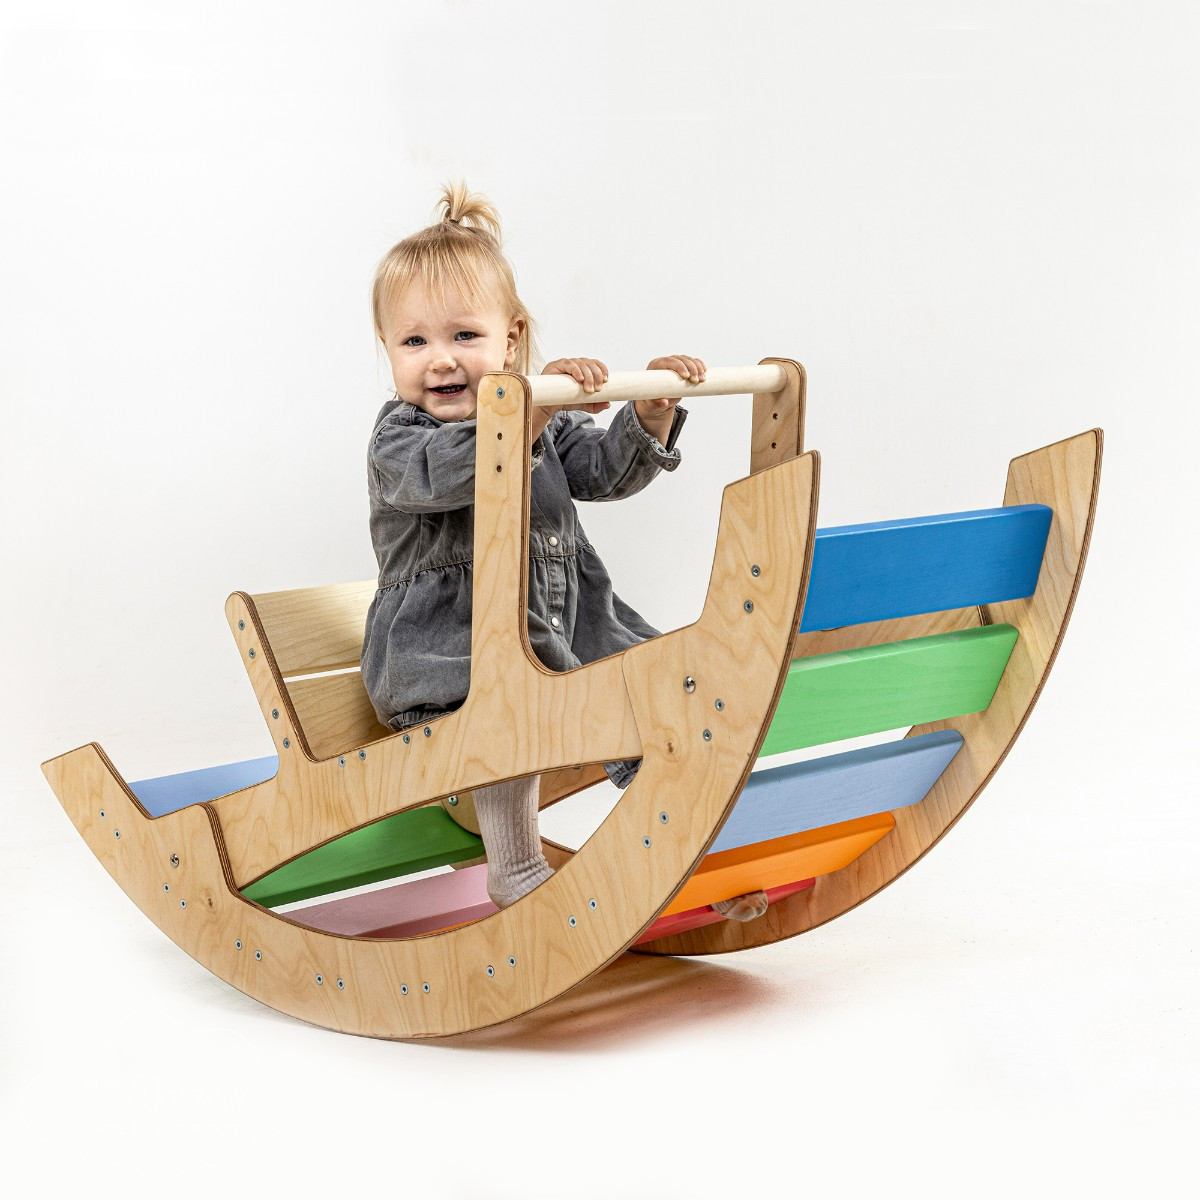 Arche de motricité assise en bois pour enfant – Kit complet (Arche